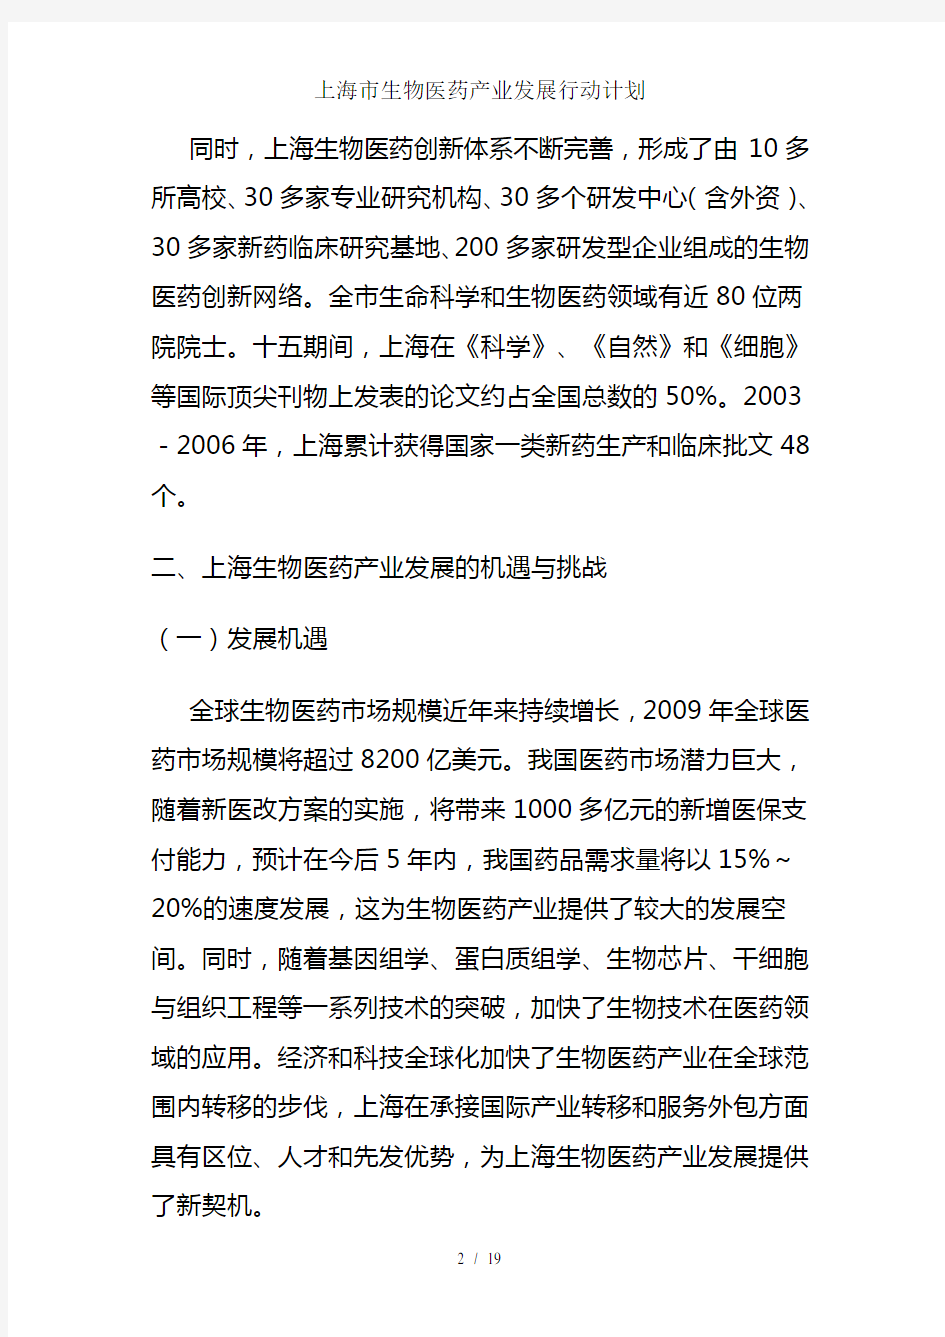 上海市生物医药产业发展行动计划